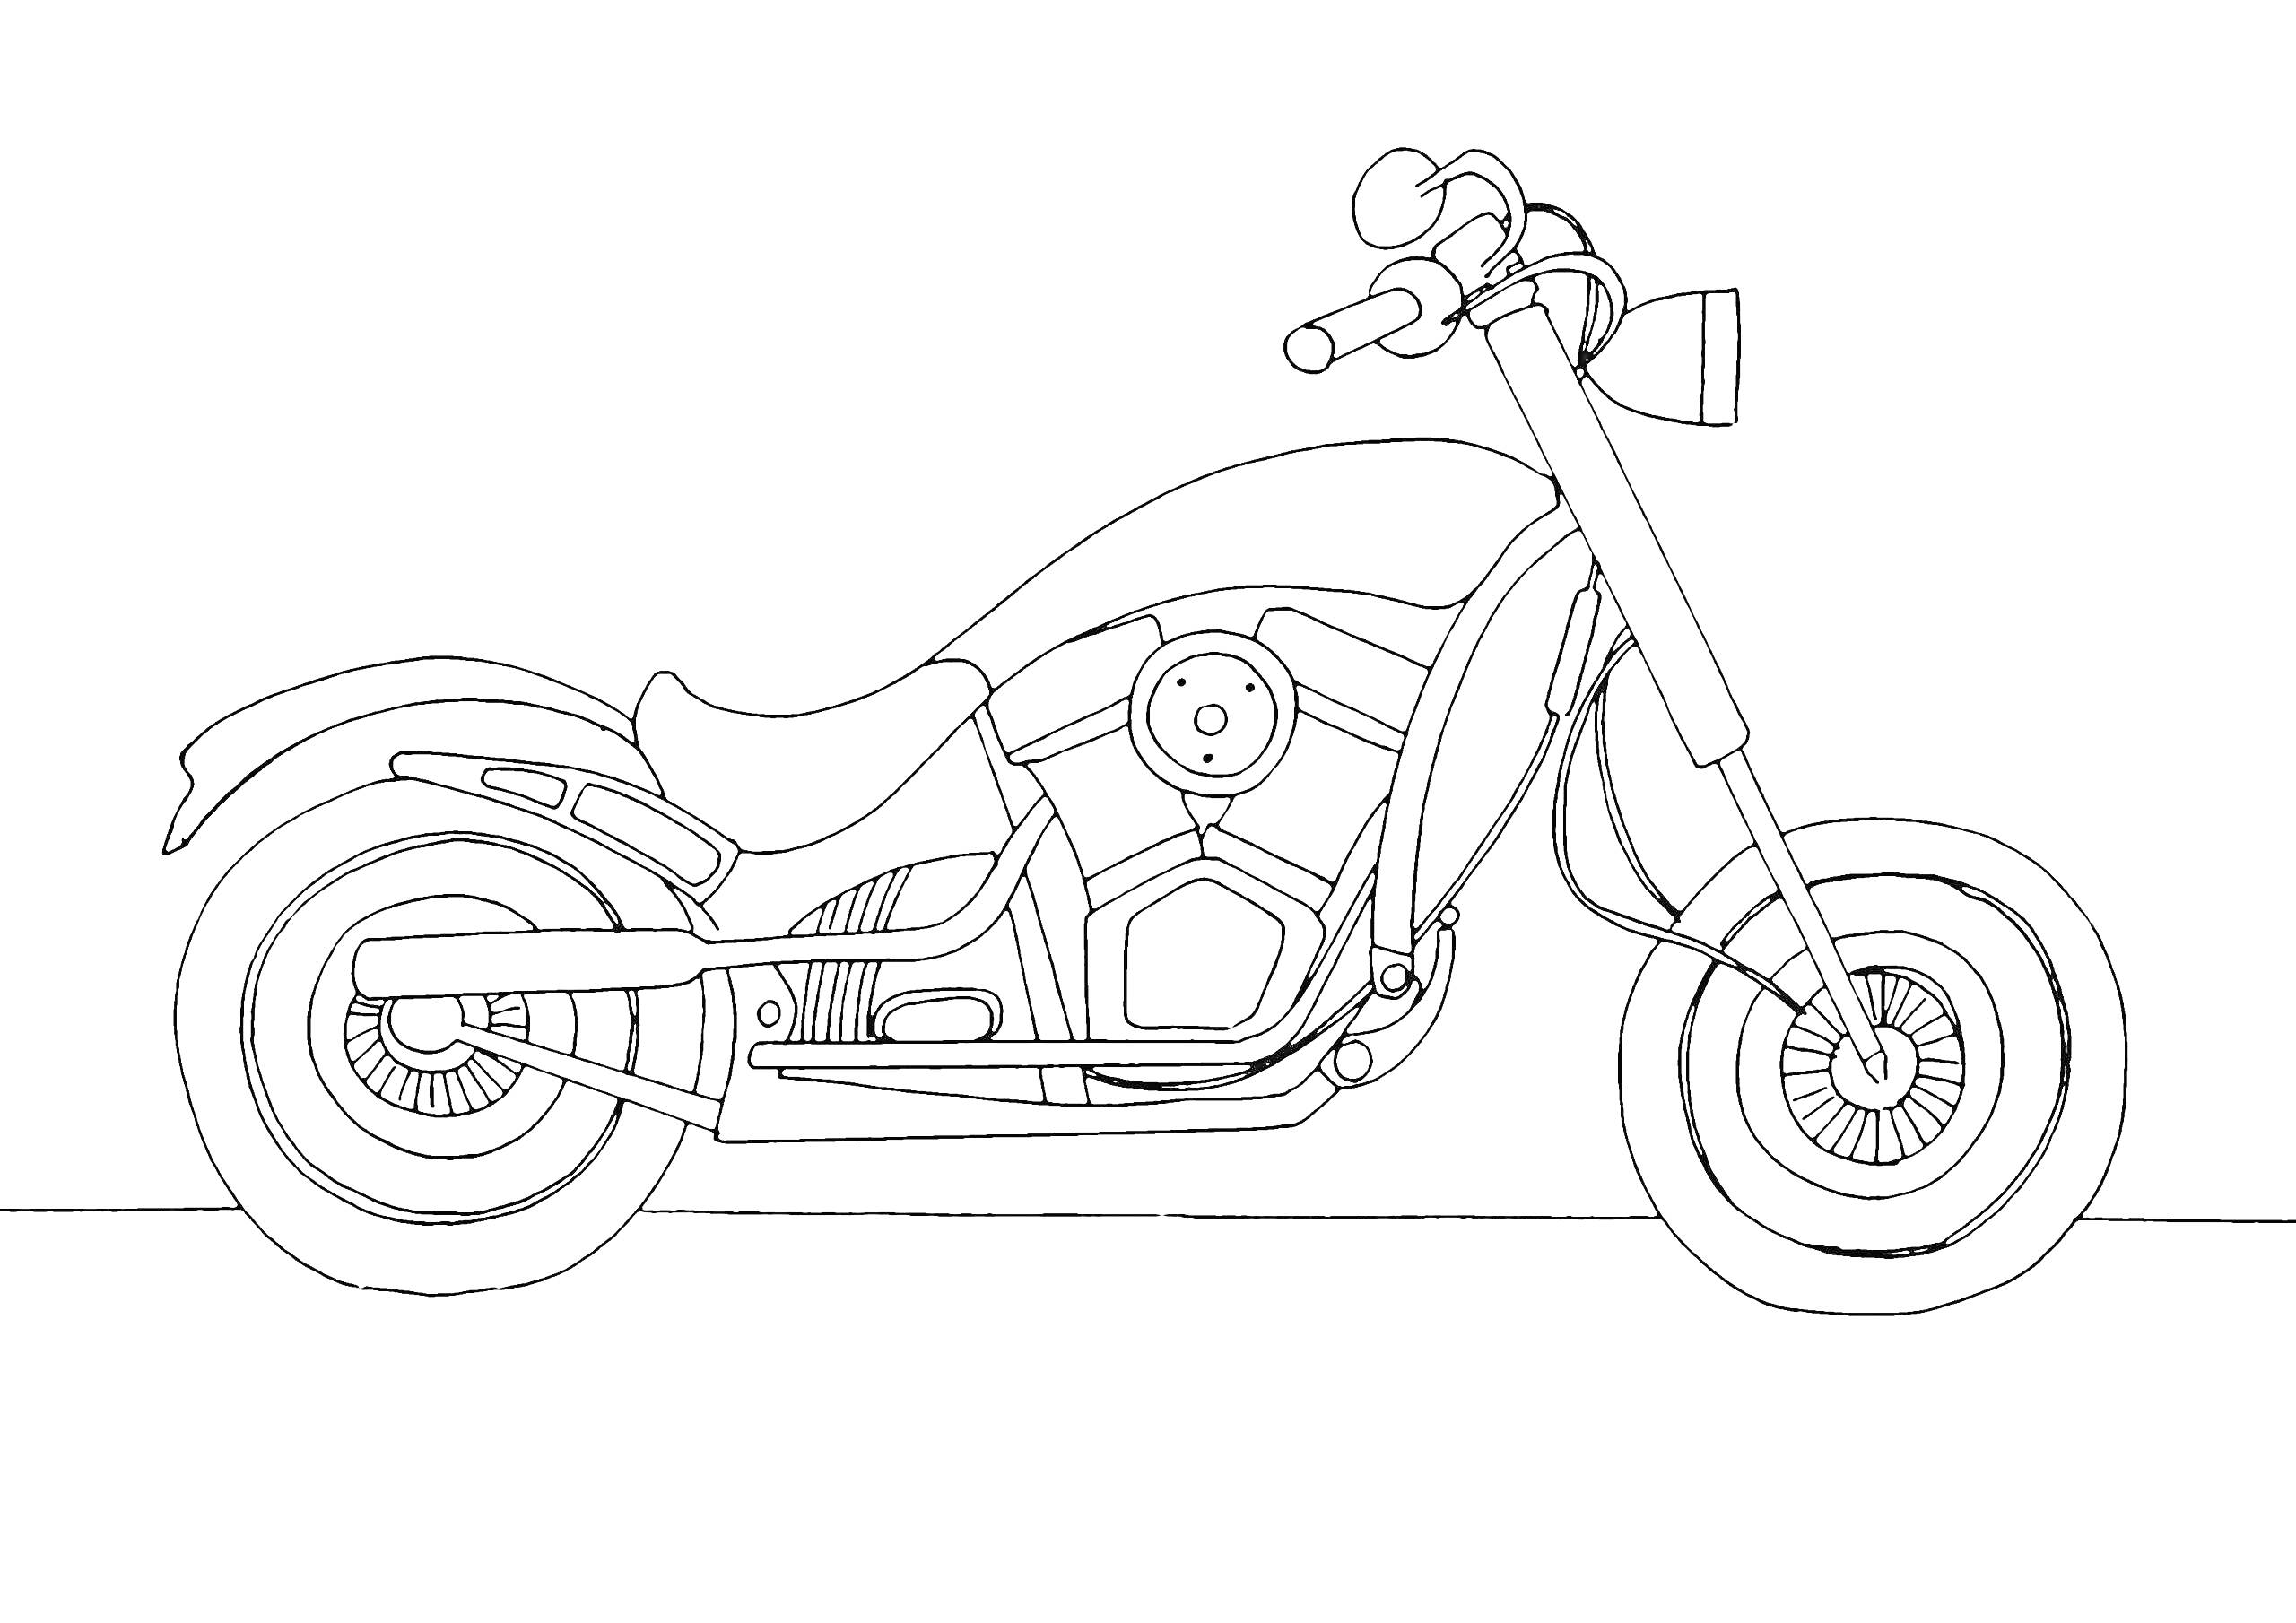 Раскраска Мотоцикл с ручками, сиденьем, колесами, фарой, бензобаком, выхлопной трубой, рамой и двигателем